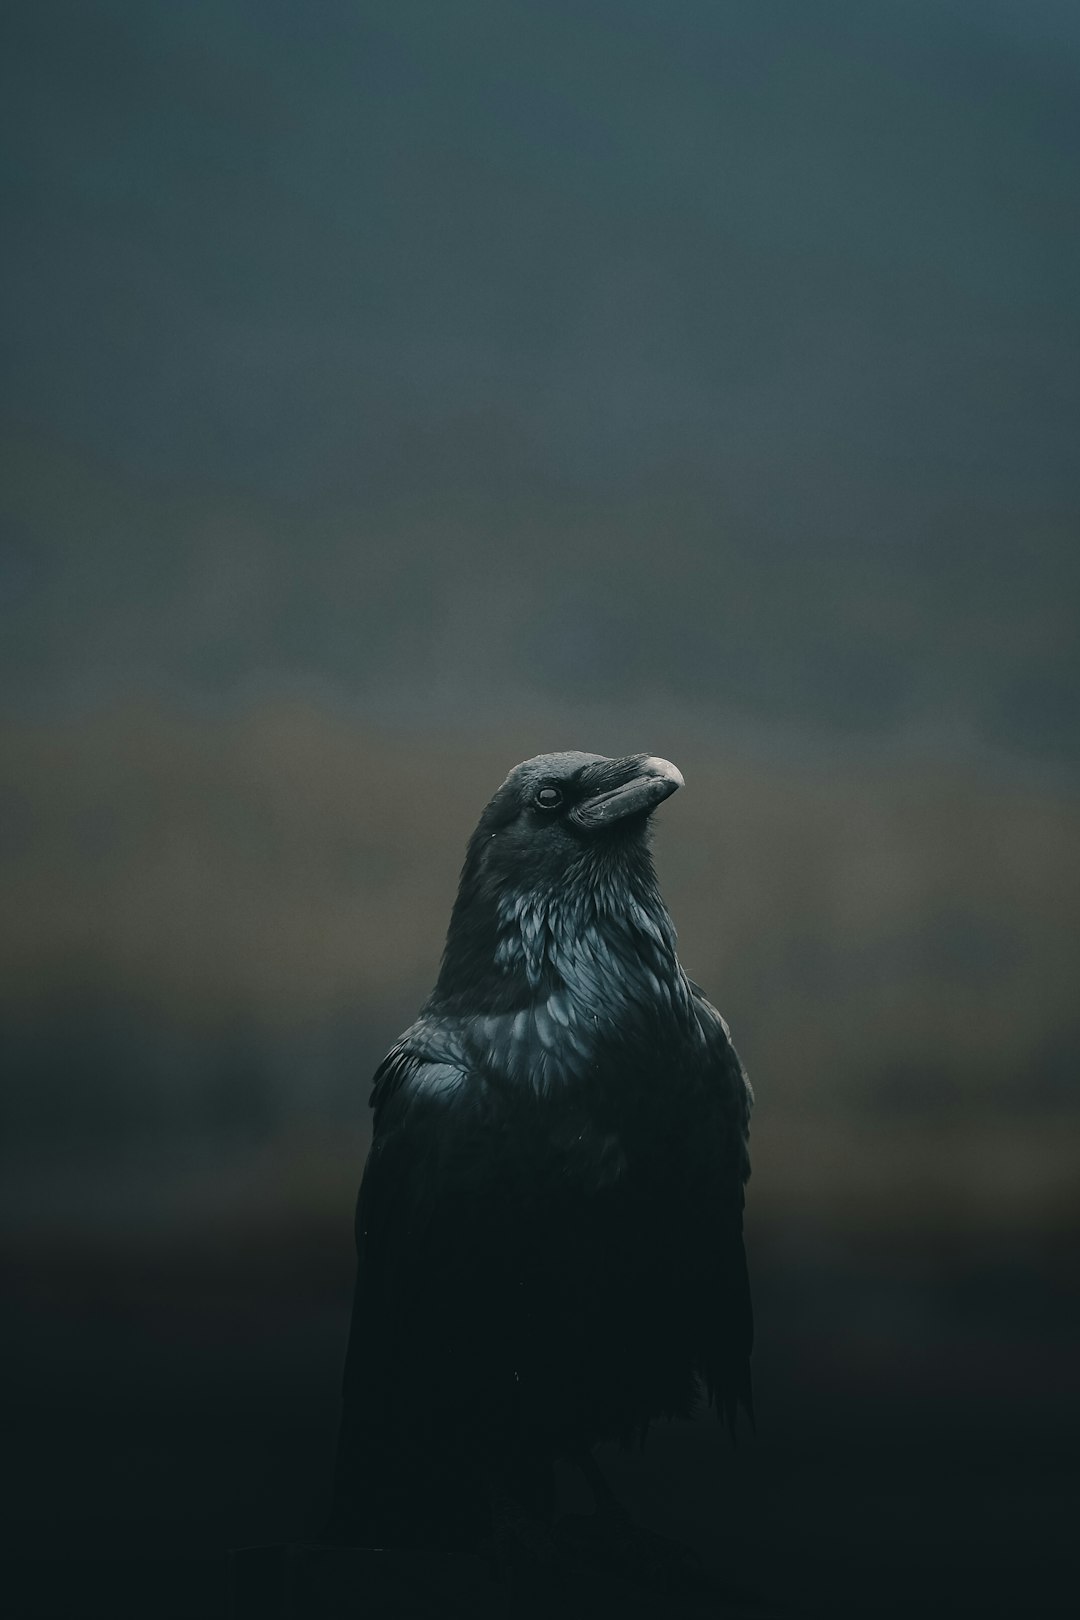  black bird close up photography crow